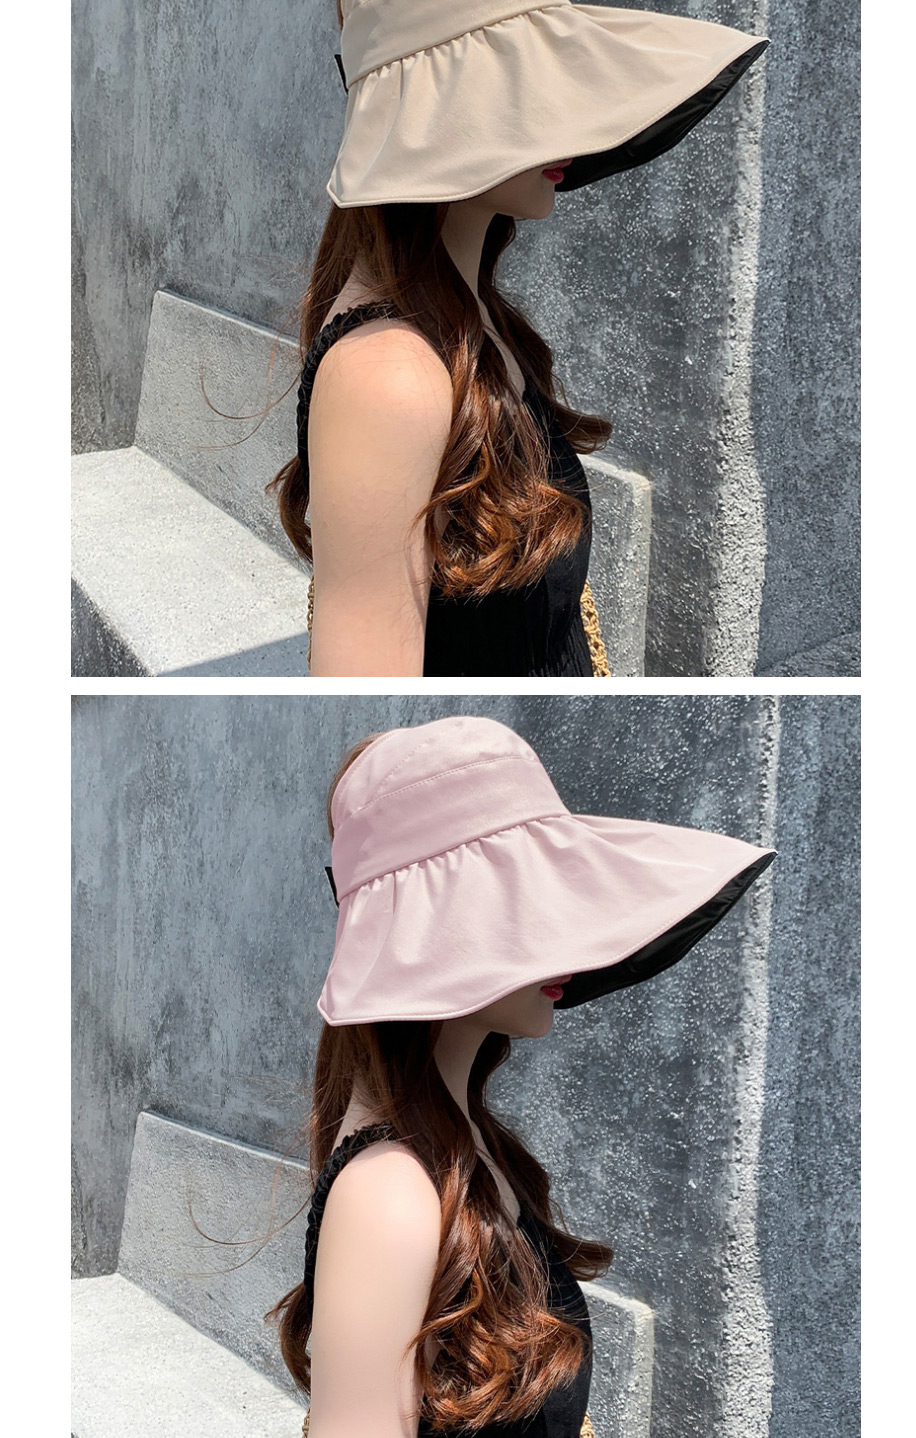 Fashion Shell Hat Pink Large-brimmed Black Rubber Sunshade Sun Hat,Sun Hats